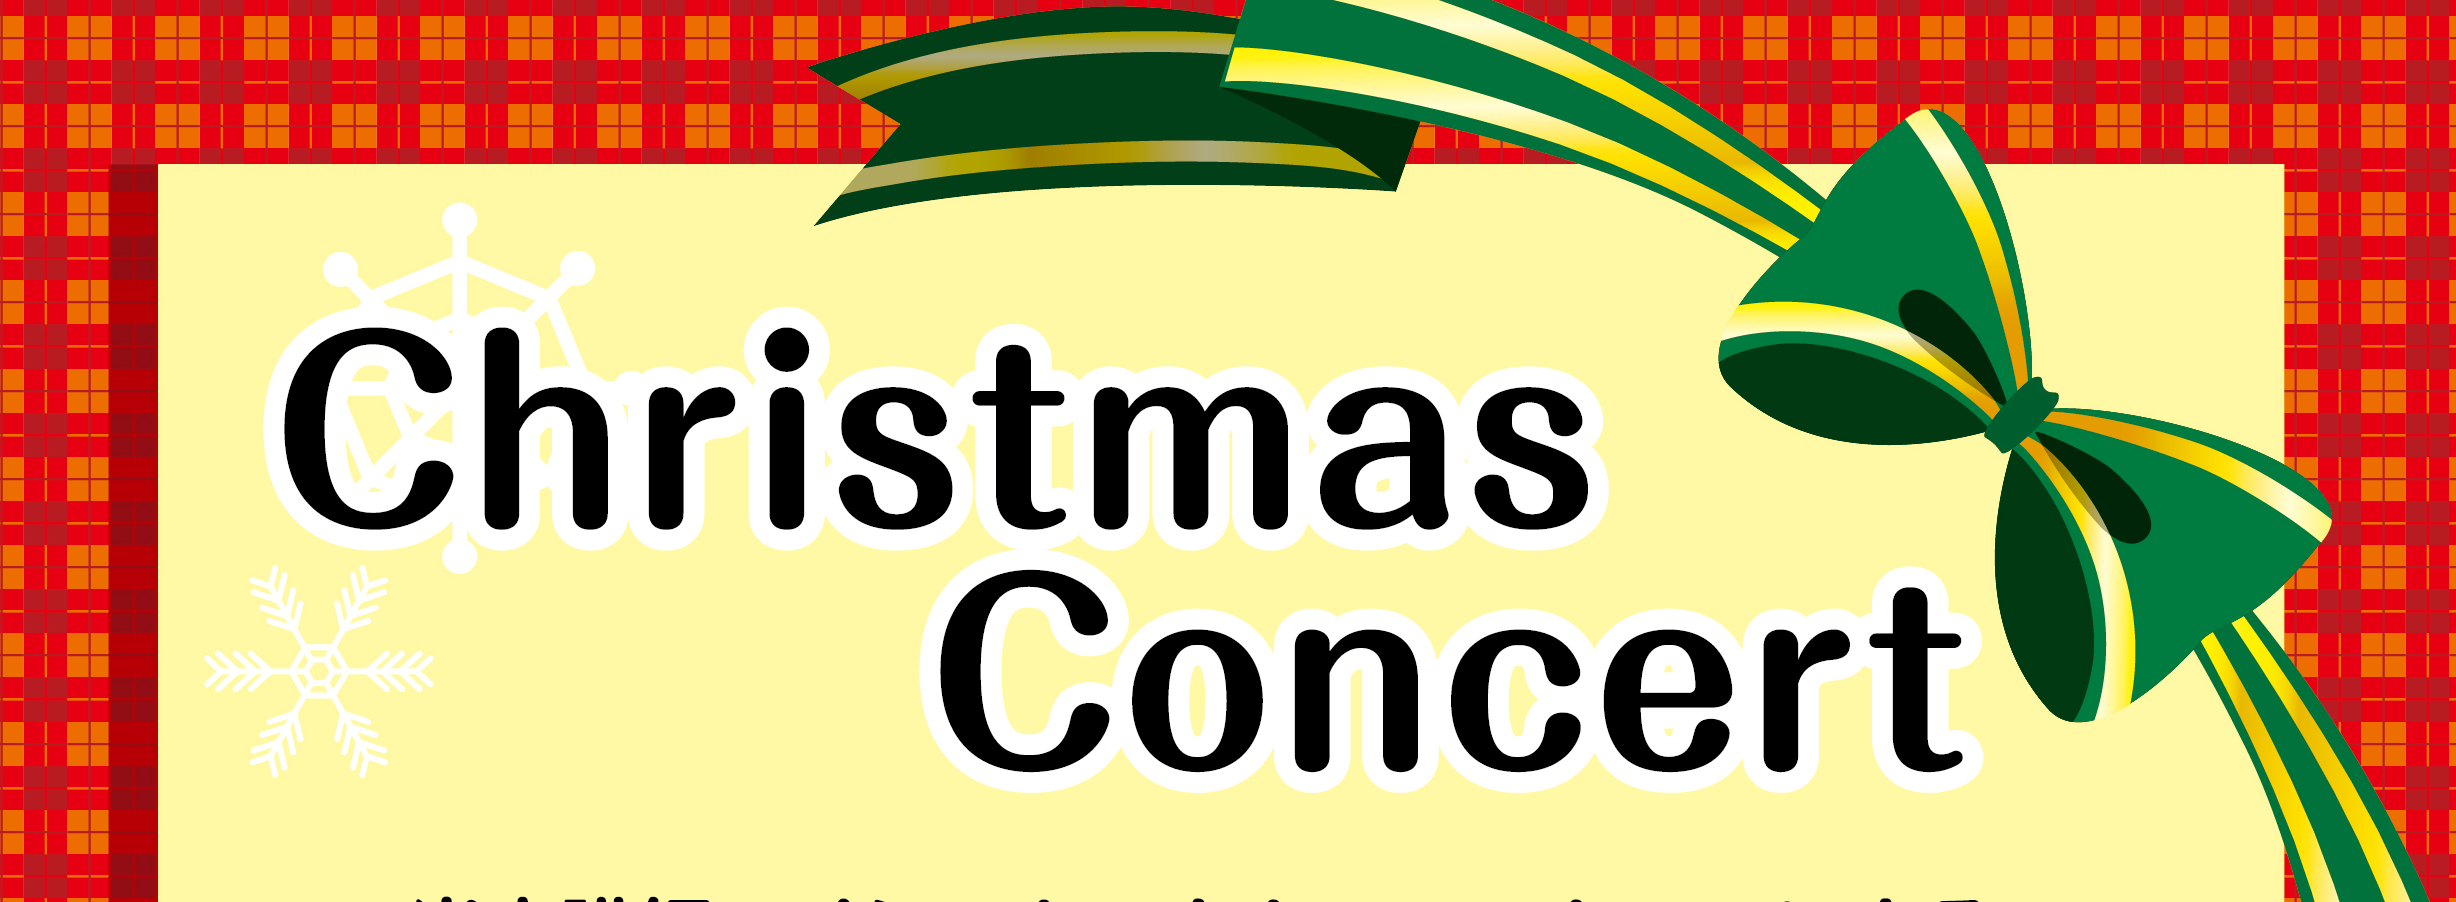 *Christmas Concertのご案内 皆様、こんにちは！ 今年もChristmas Concertを店頭で行います?⛄]]クリスマスの定番曲を中心に演奏いたします。 ご家族やお友達と楽しんでいただけたら嬉しいです♪]]観覧は無料なので、ぜひお越しください！ |*日程|2020年12月20日( […]